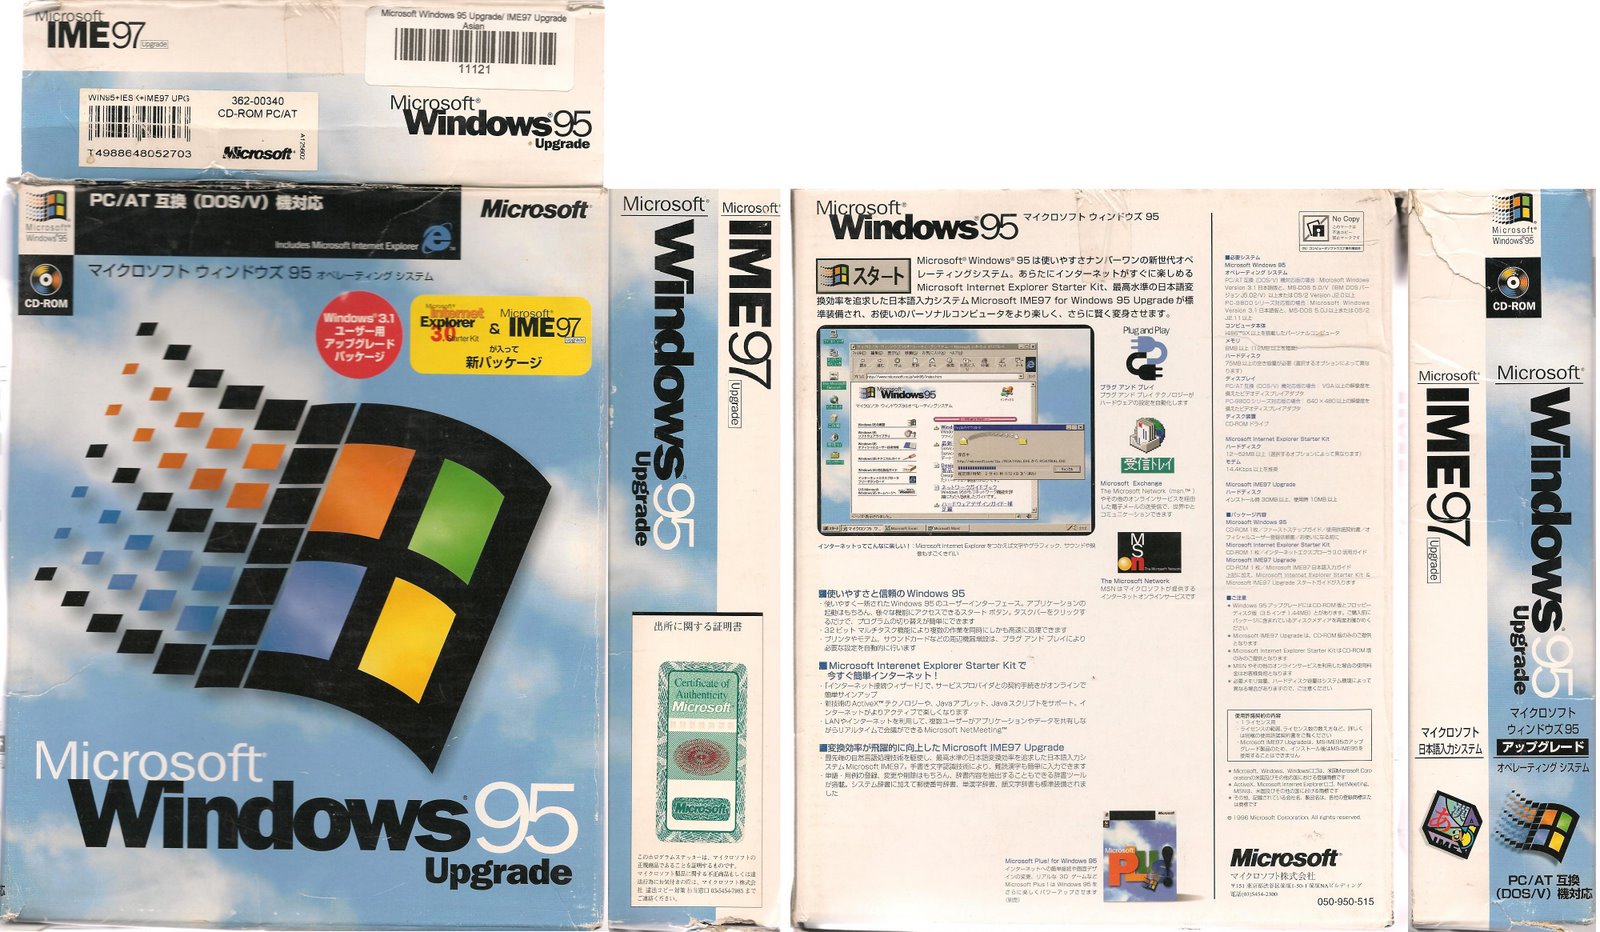 windows 95 virtualbox image download